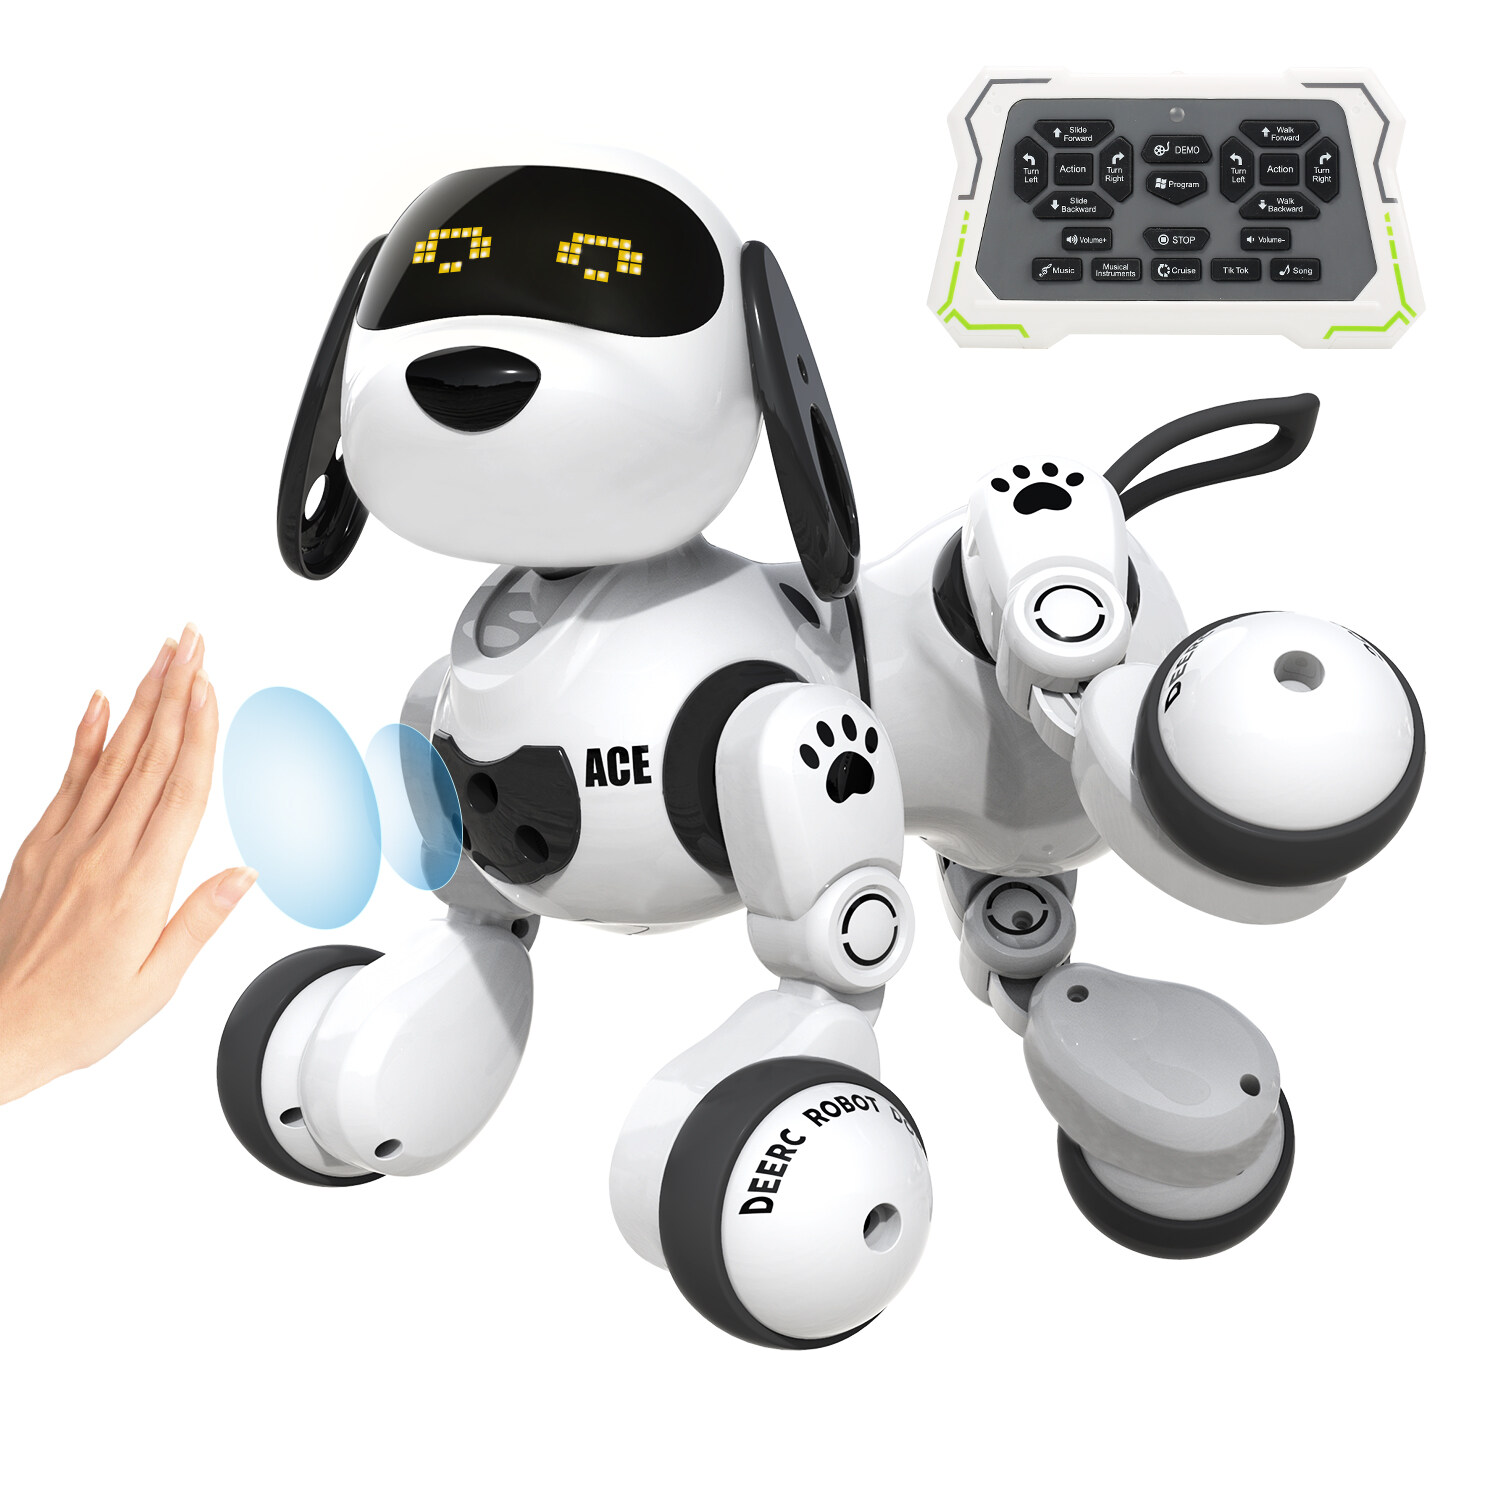 Đồ chơi robot DEERC cho trẻ em robot điều khiển từ xa có thể lập trình thông minh với cảm...